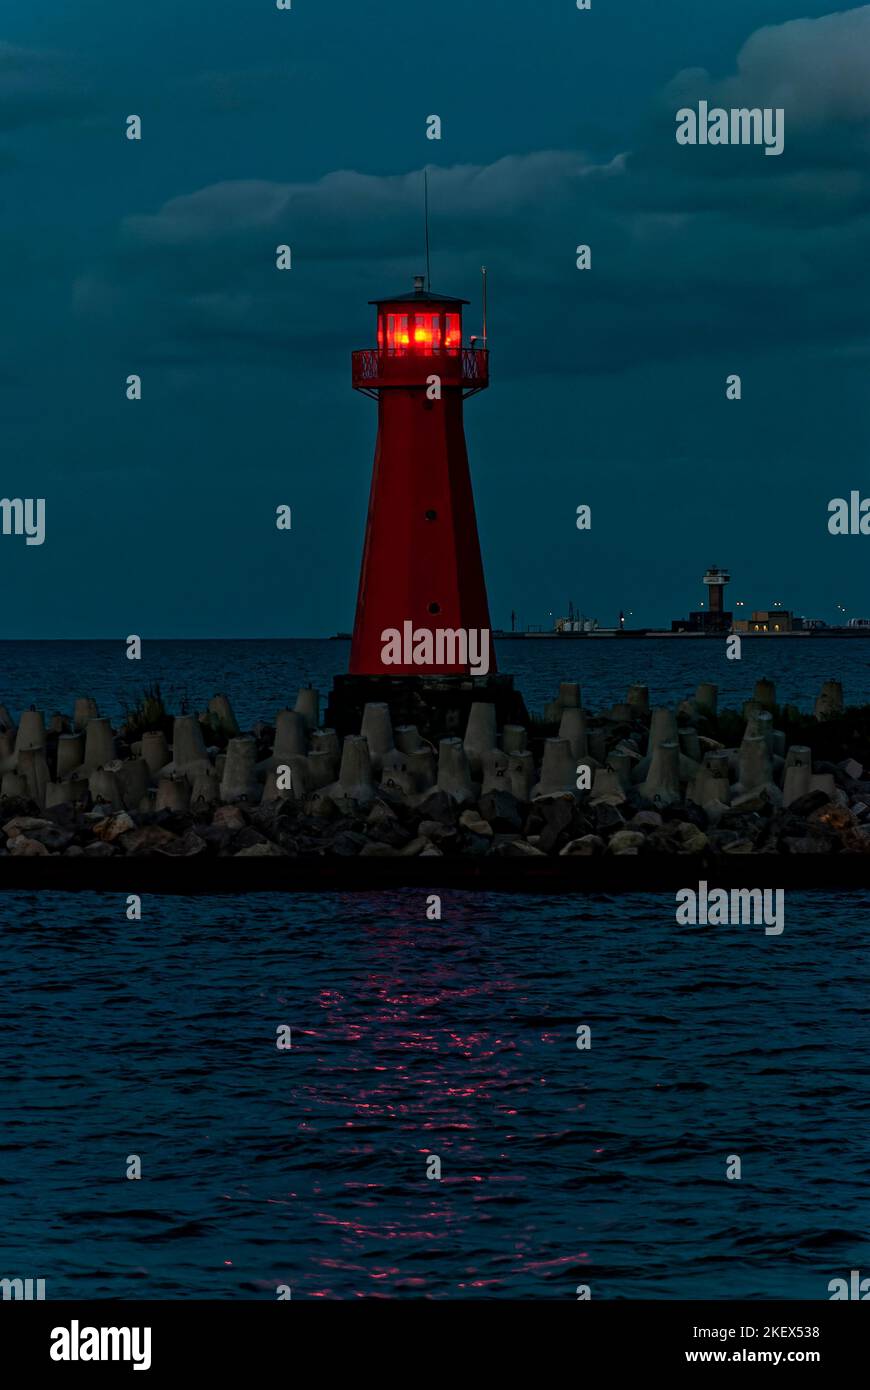 Cartolina dal mare con un faro la sera. Sono visibili i riflessi di luce del faro sulla superficie del mare. Foto Stock